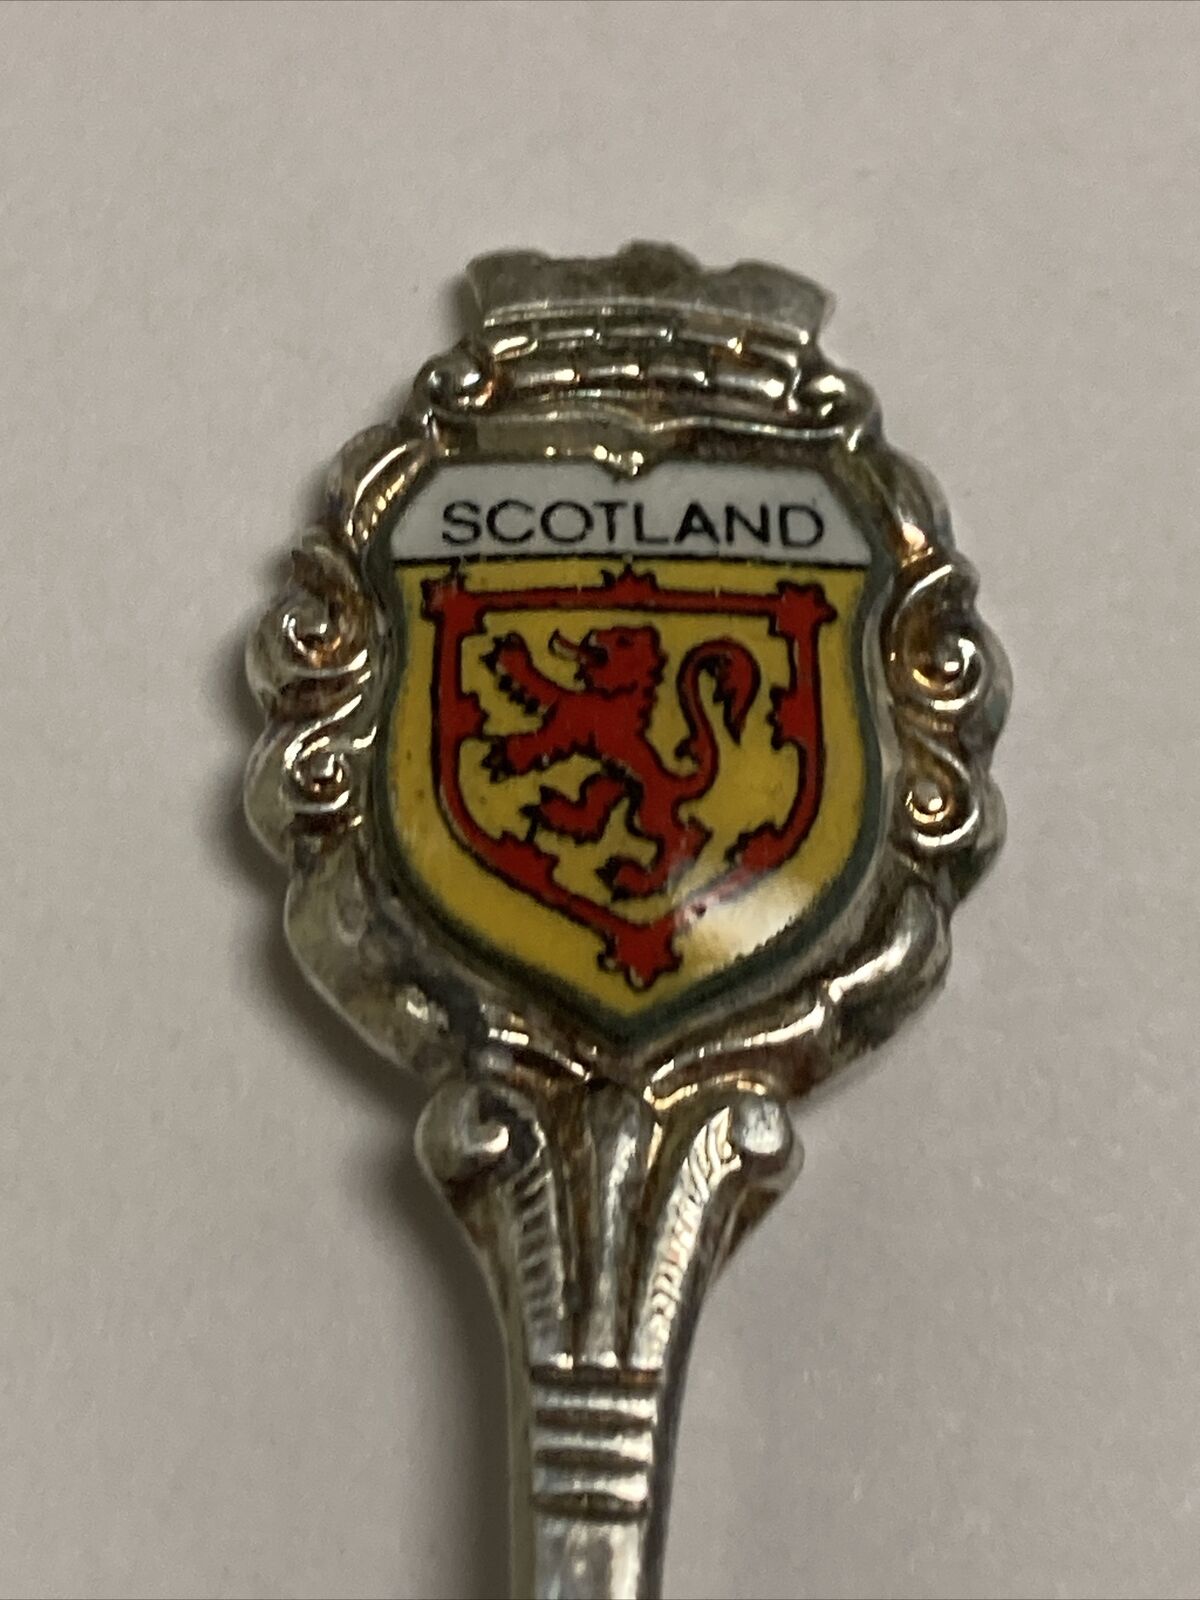 Scotland Vintage Souvenir Spoon Collectible